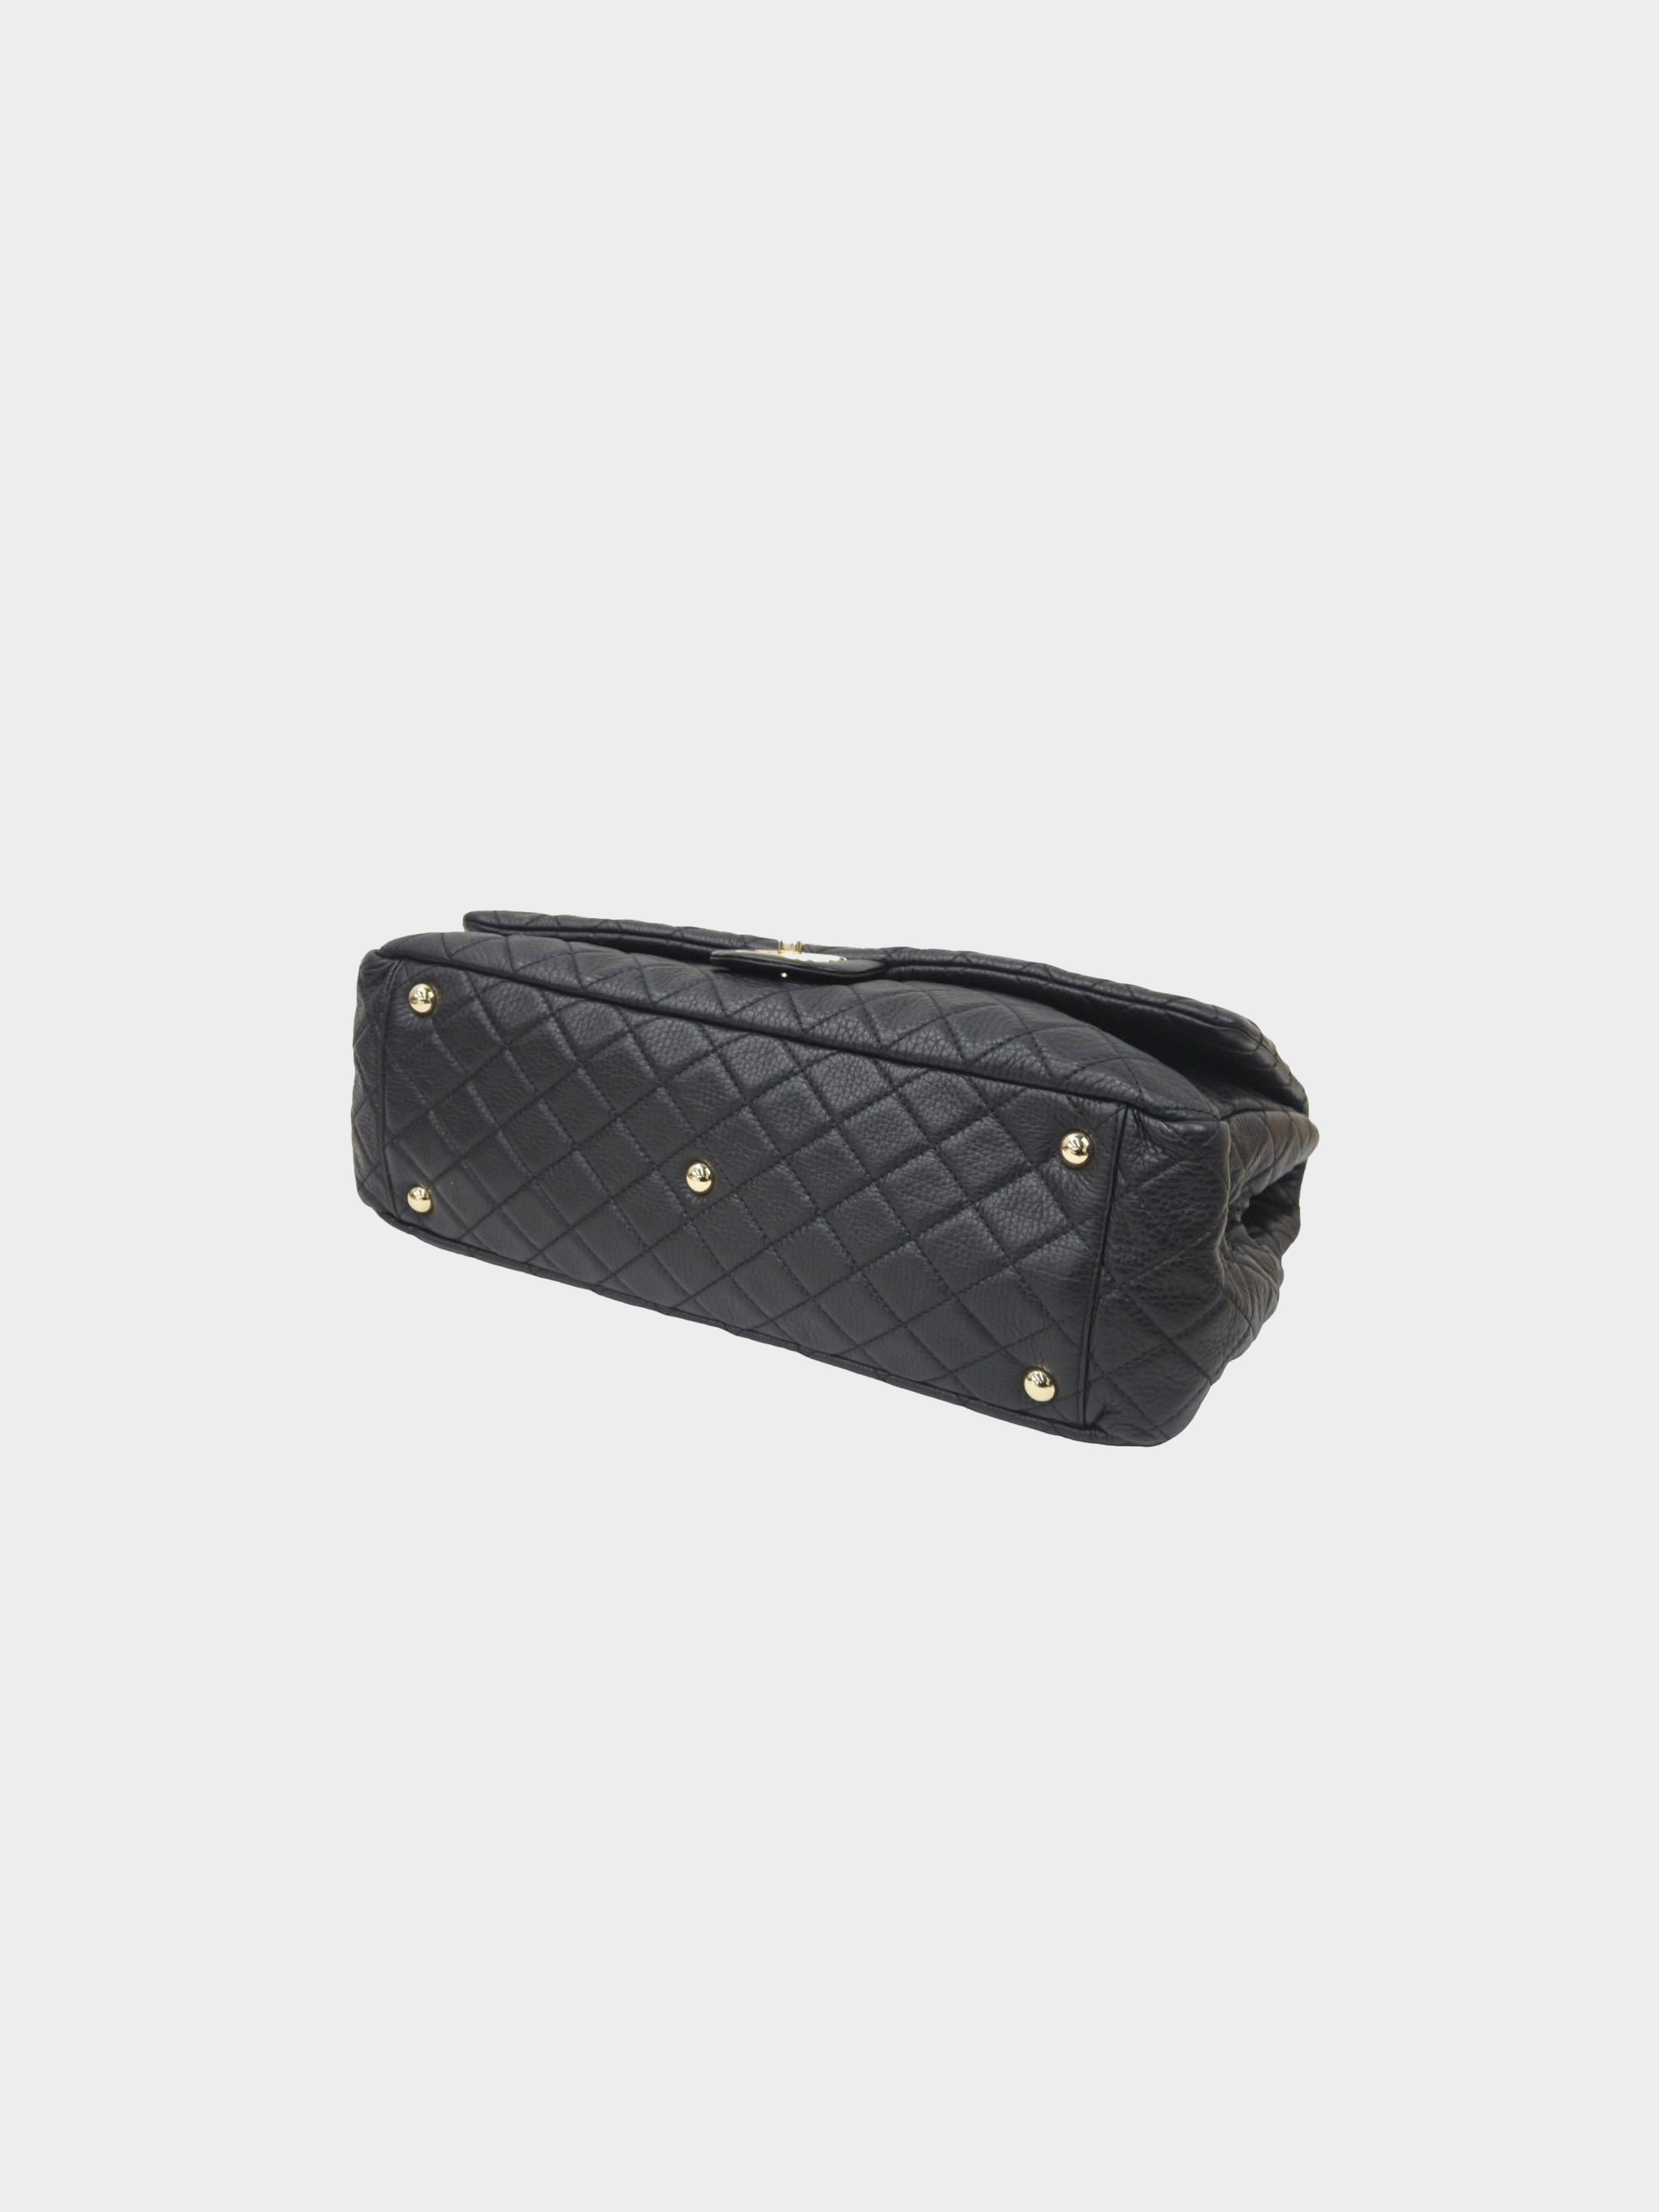 Chanel Vintage Mademoiselle Jumbo Classic Flap Bag Black